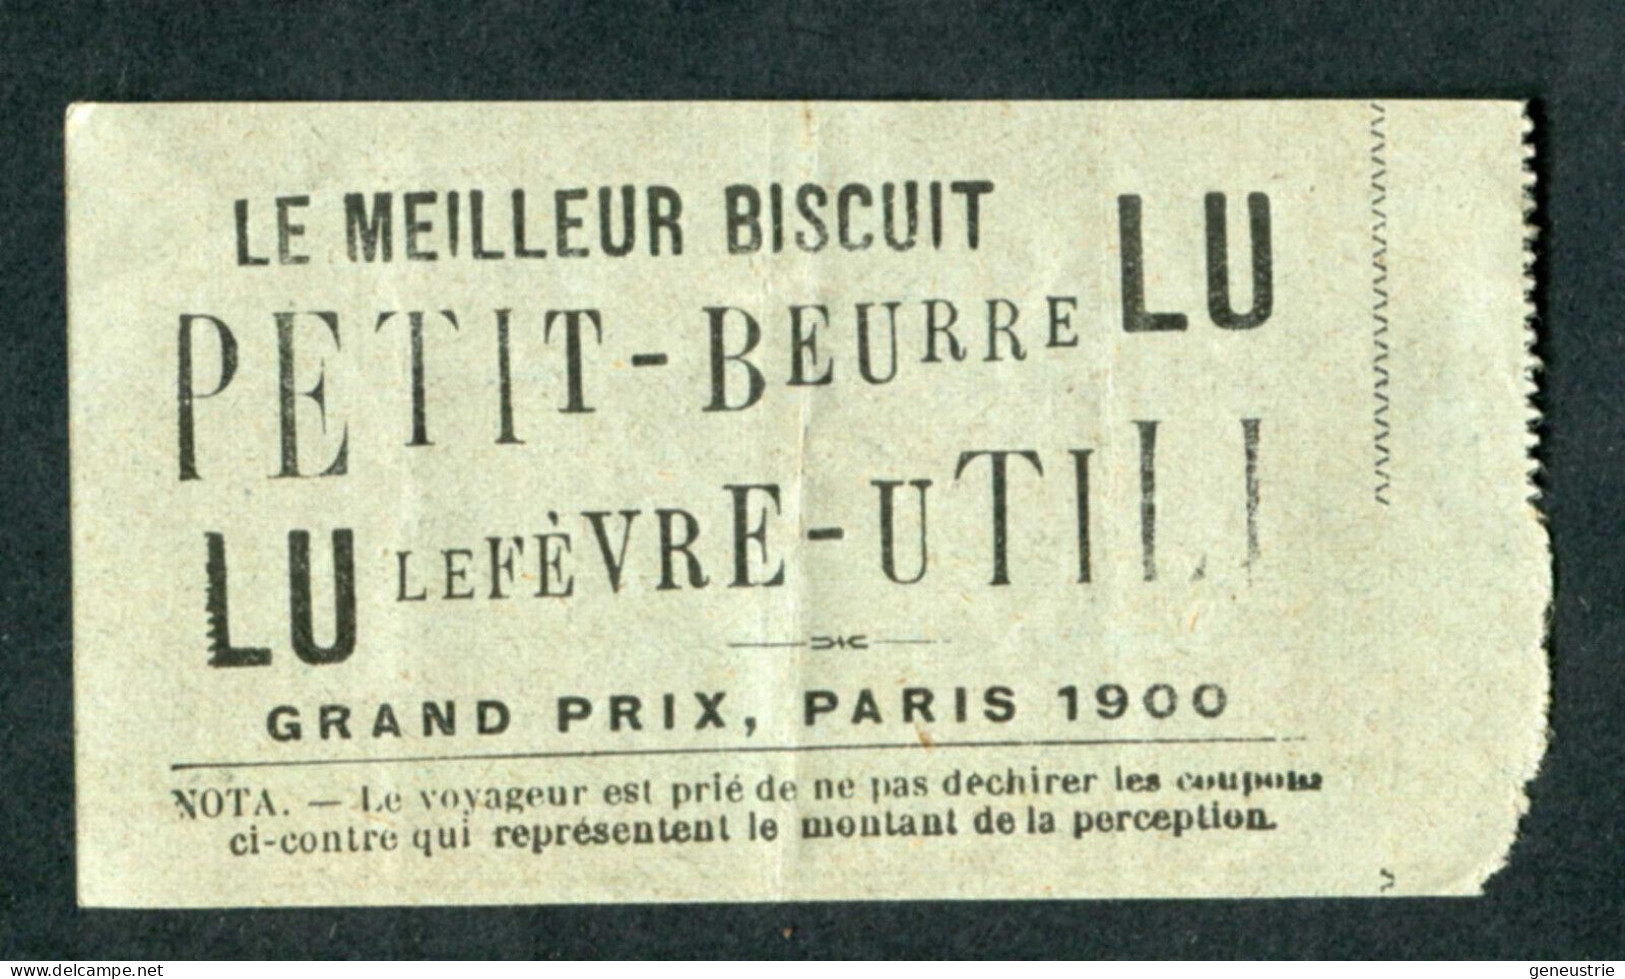 Ticket Tramway Alger Vers 1900 "Chemin De Fer Sur Route D'Algerie" Billet Chemin De Fer - Pub Petit-Beurre LU - Monde